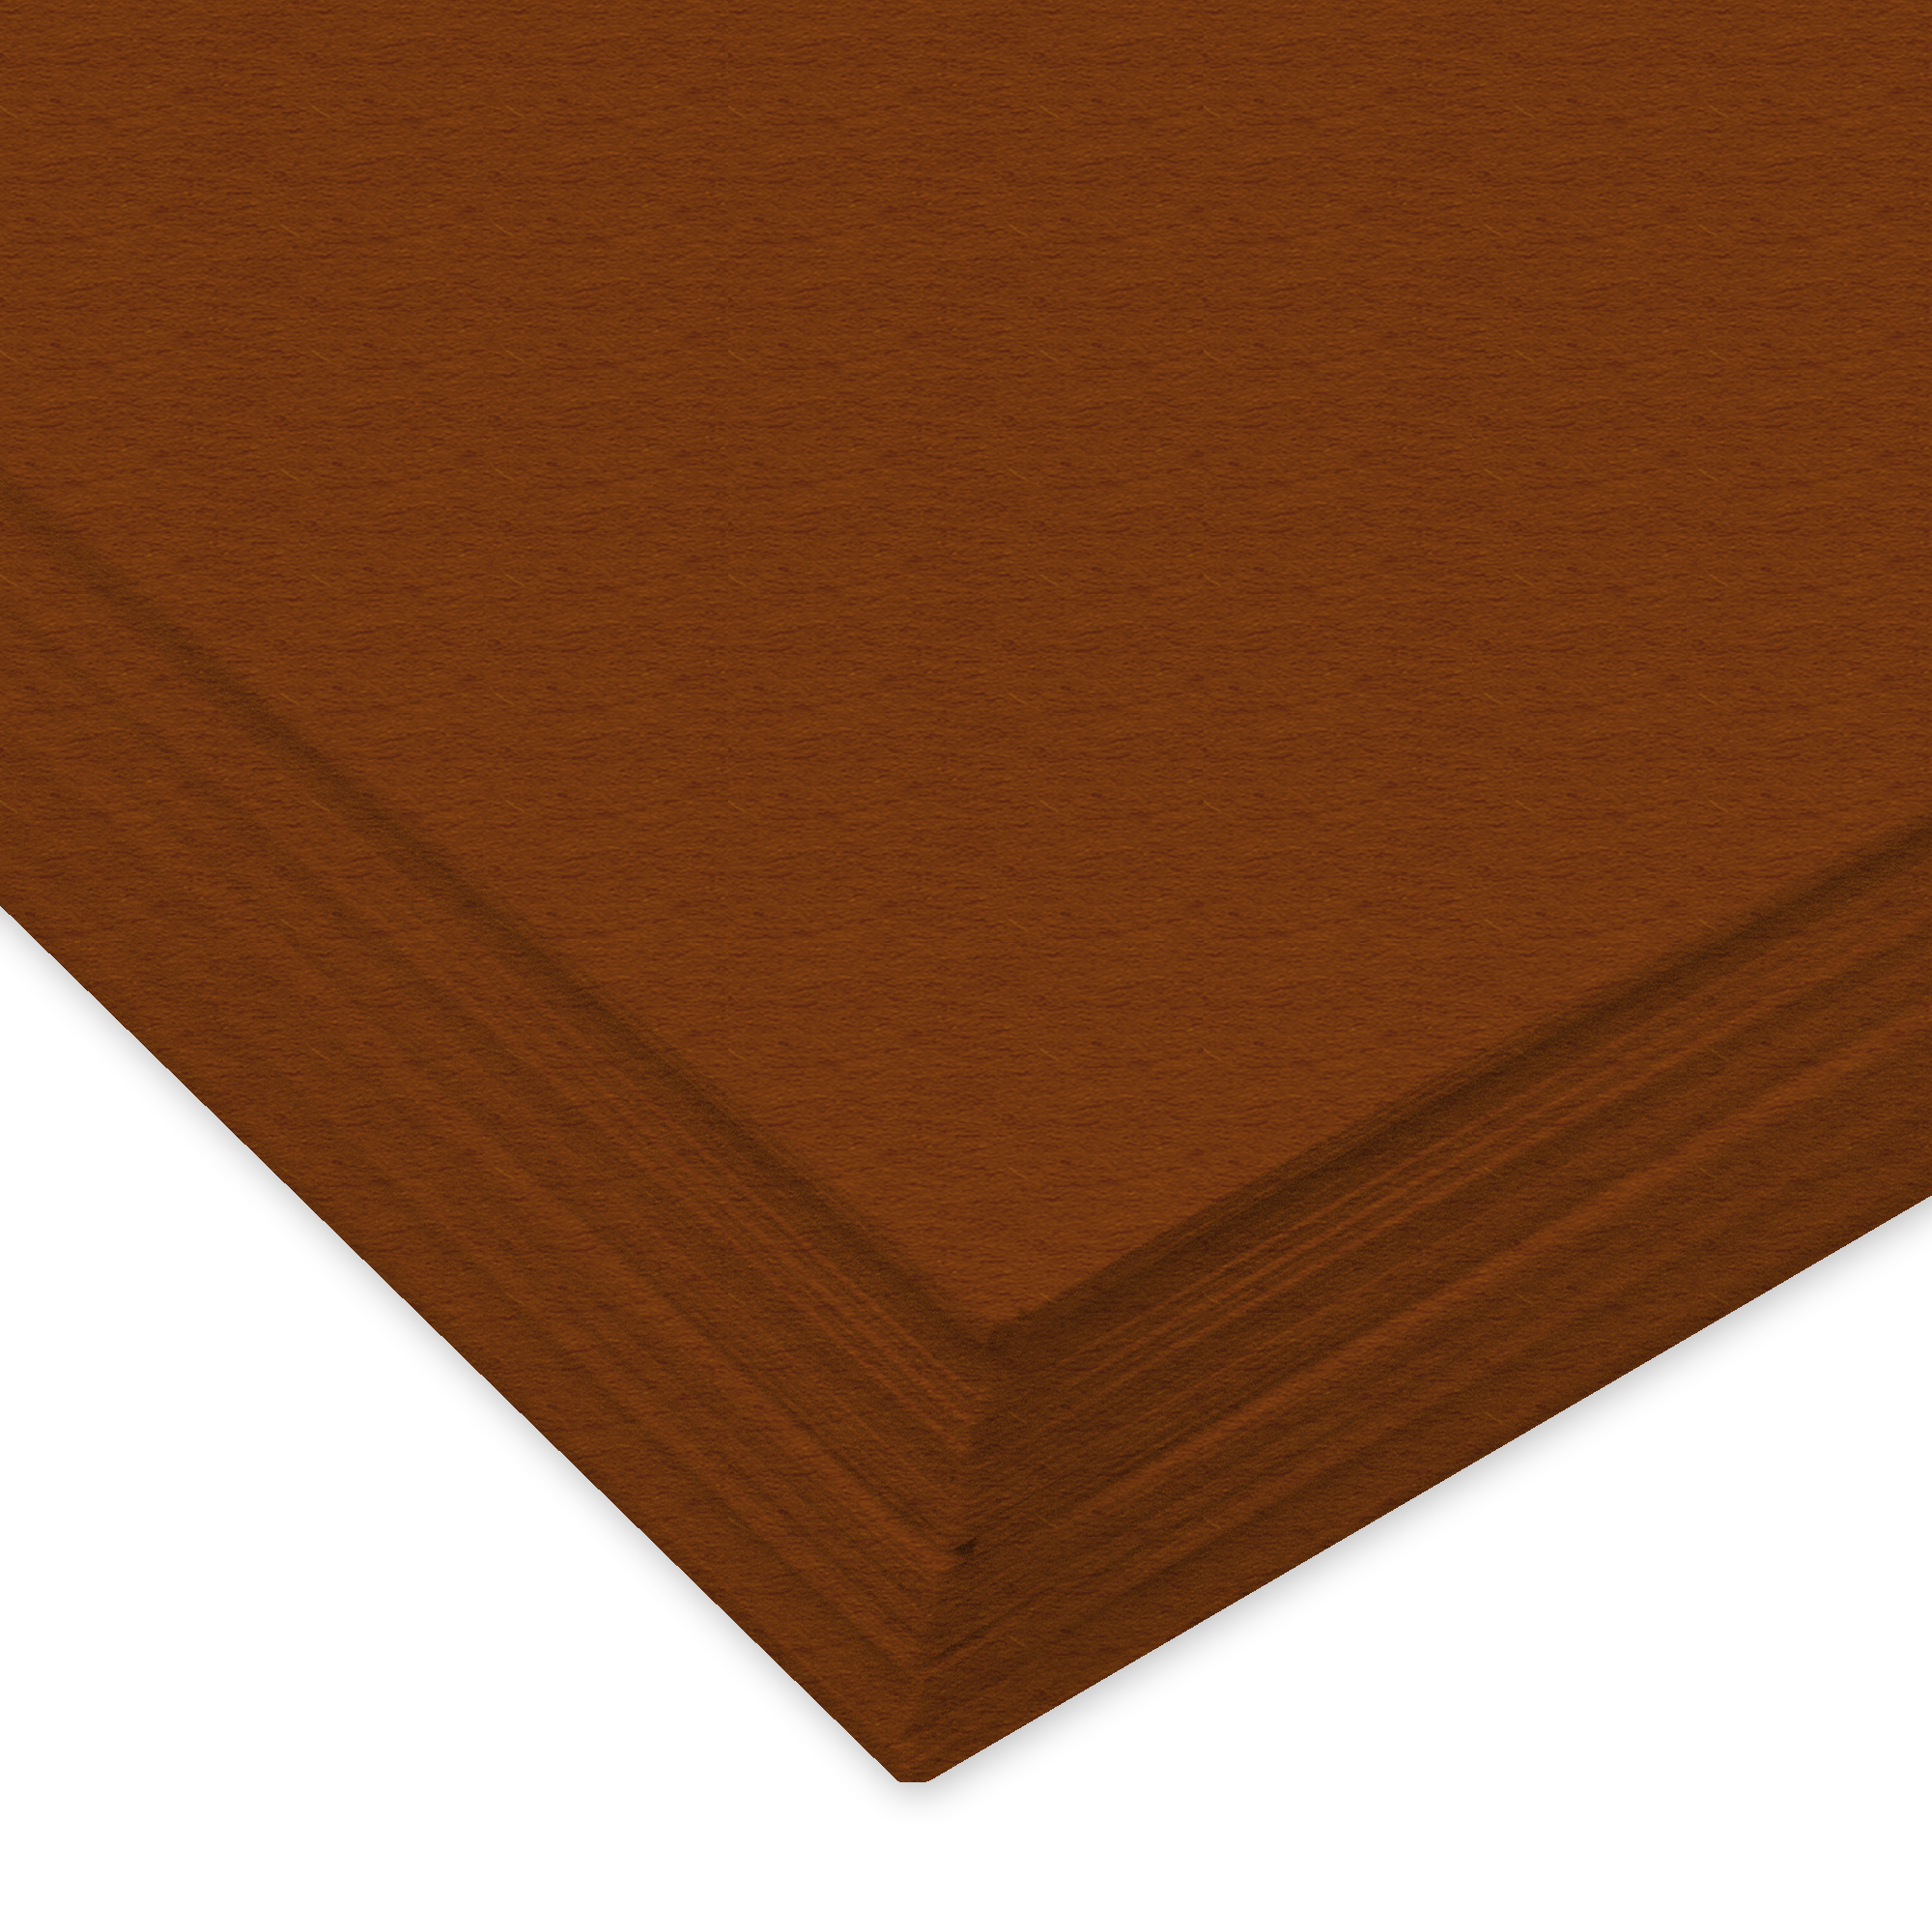 URSUS Papier à dessin couleur A3 2174072 130g, brun moyen 100 feuilles 130g, brun moyen 100 feuilles